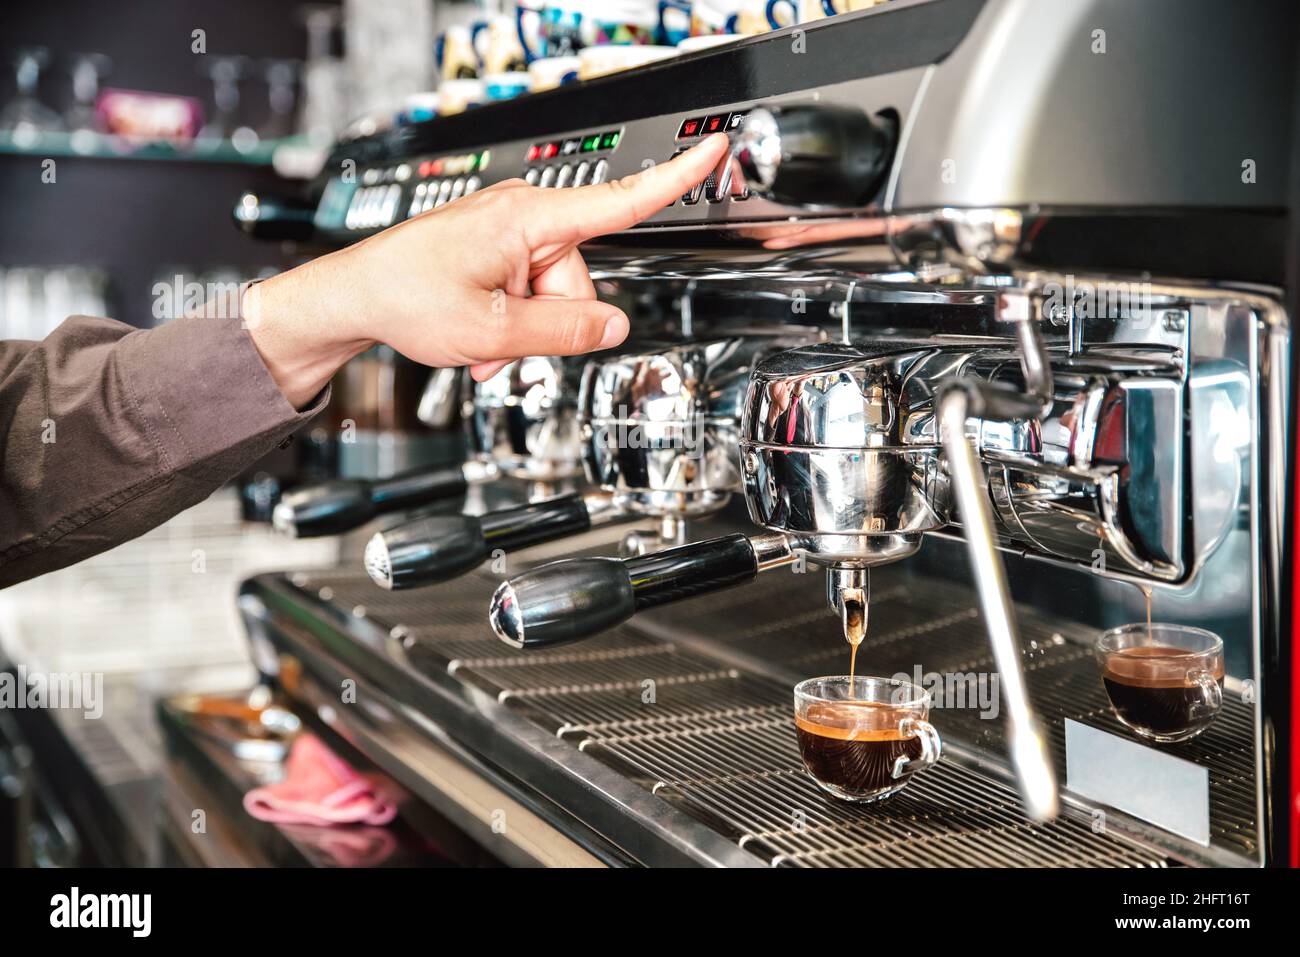 Klassischer Barista, der italienischen Espresso auf die Kaffeebar-Maschine in der Fashion Cafeteria gießt - Konzept der Lebensmittel- und Getränkeindustrie mit einem professionellen Barkeeper Stockfoto